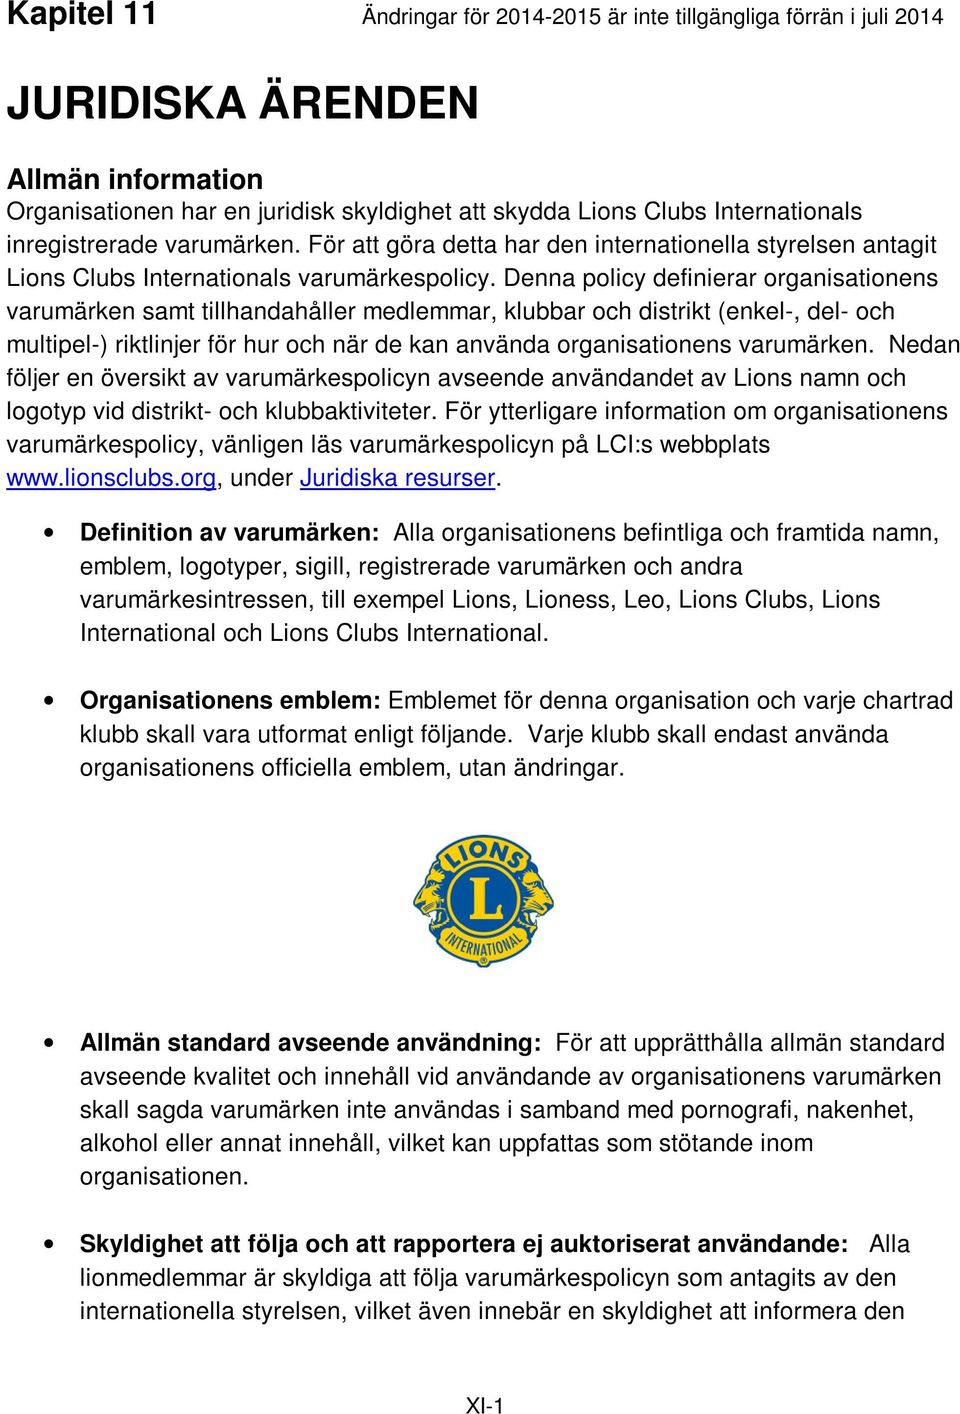 Denna policy definierar organisationens varumärken samt tillhandahåller medlemmar, klubbar och distrikt (enkel-, del- och multipel-) riktlinjer för hur och när de kan använda organisationens